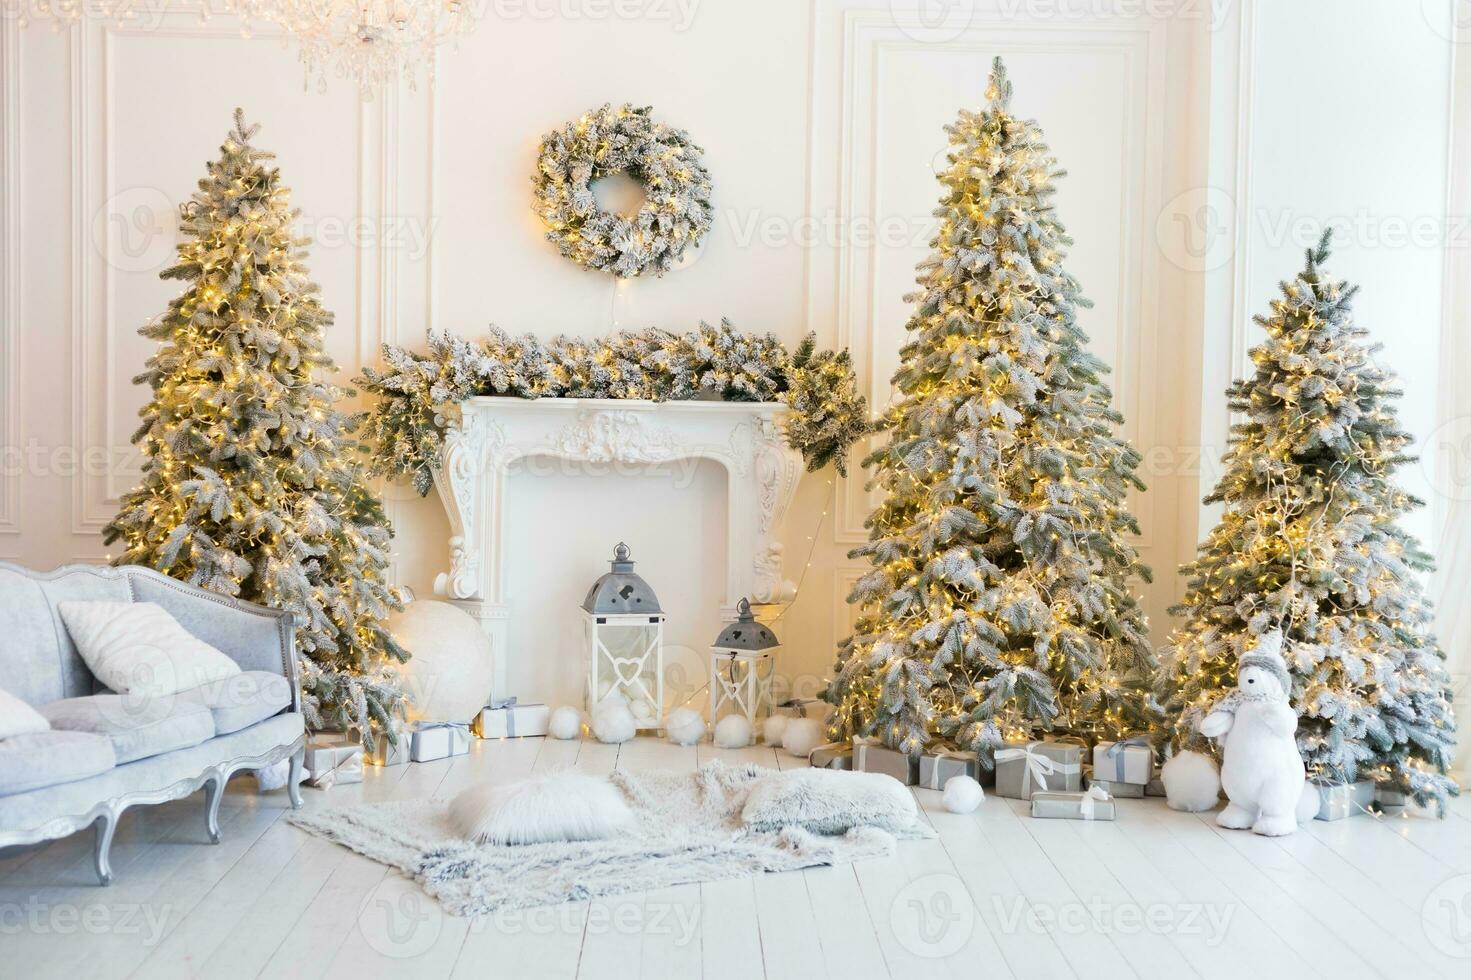 jul interiör stock foton. utforska värma och inbjudande Semester tema Hem inställningar, Utsmyckad med blinkande lampor, strumpor, och vackert dekorerad jul träd. foto